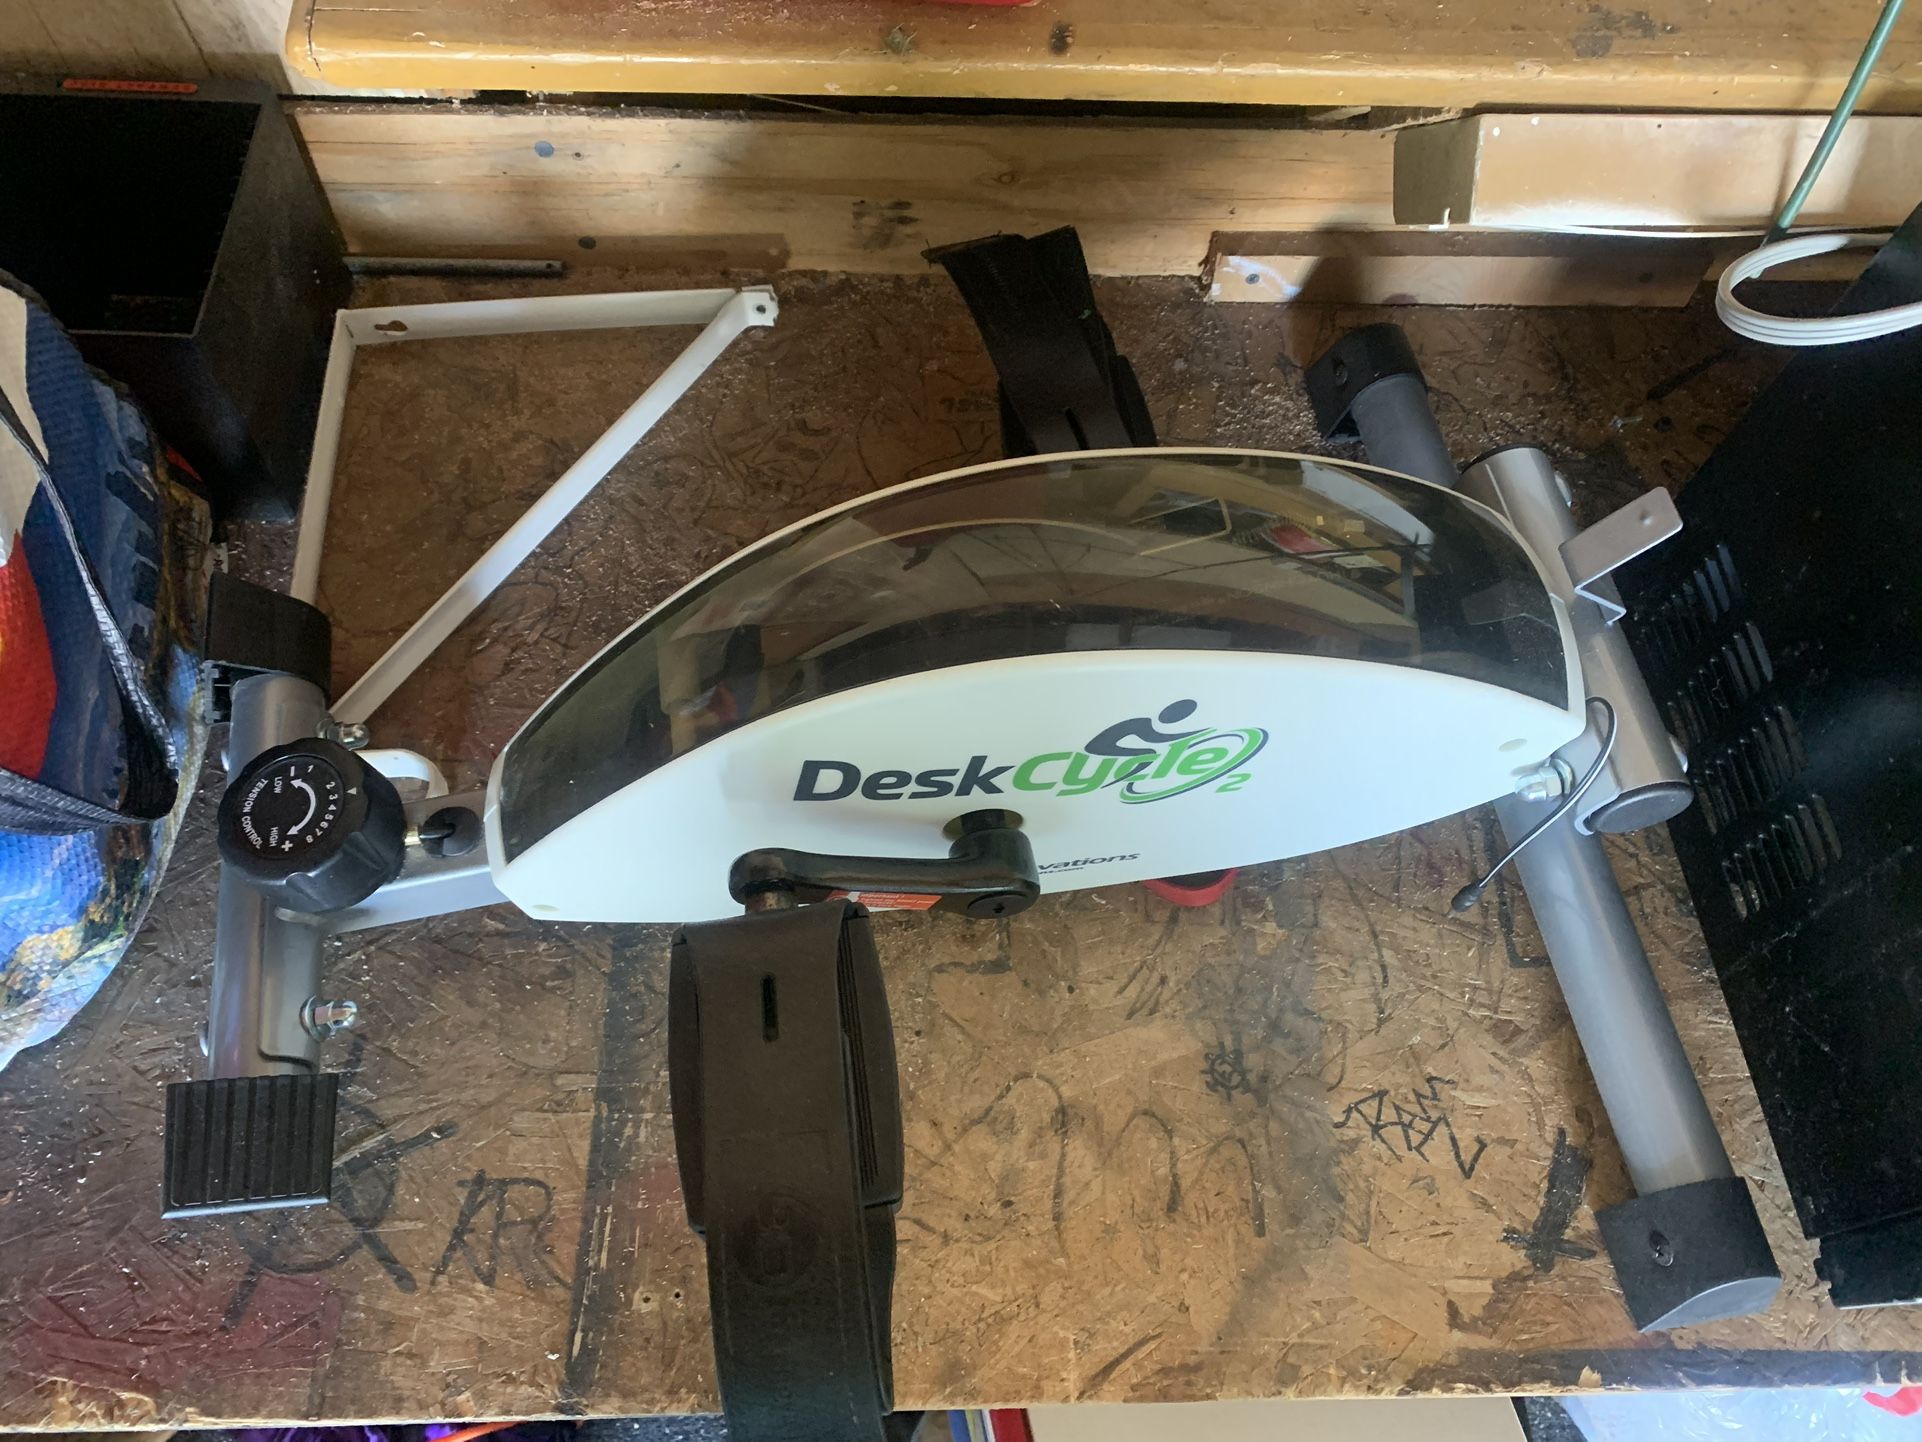 Desk Cycle: Under Desk Bike Pedal Exerciser